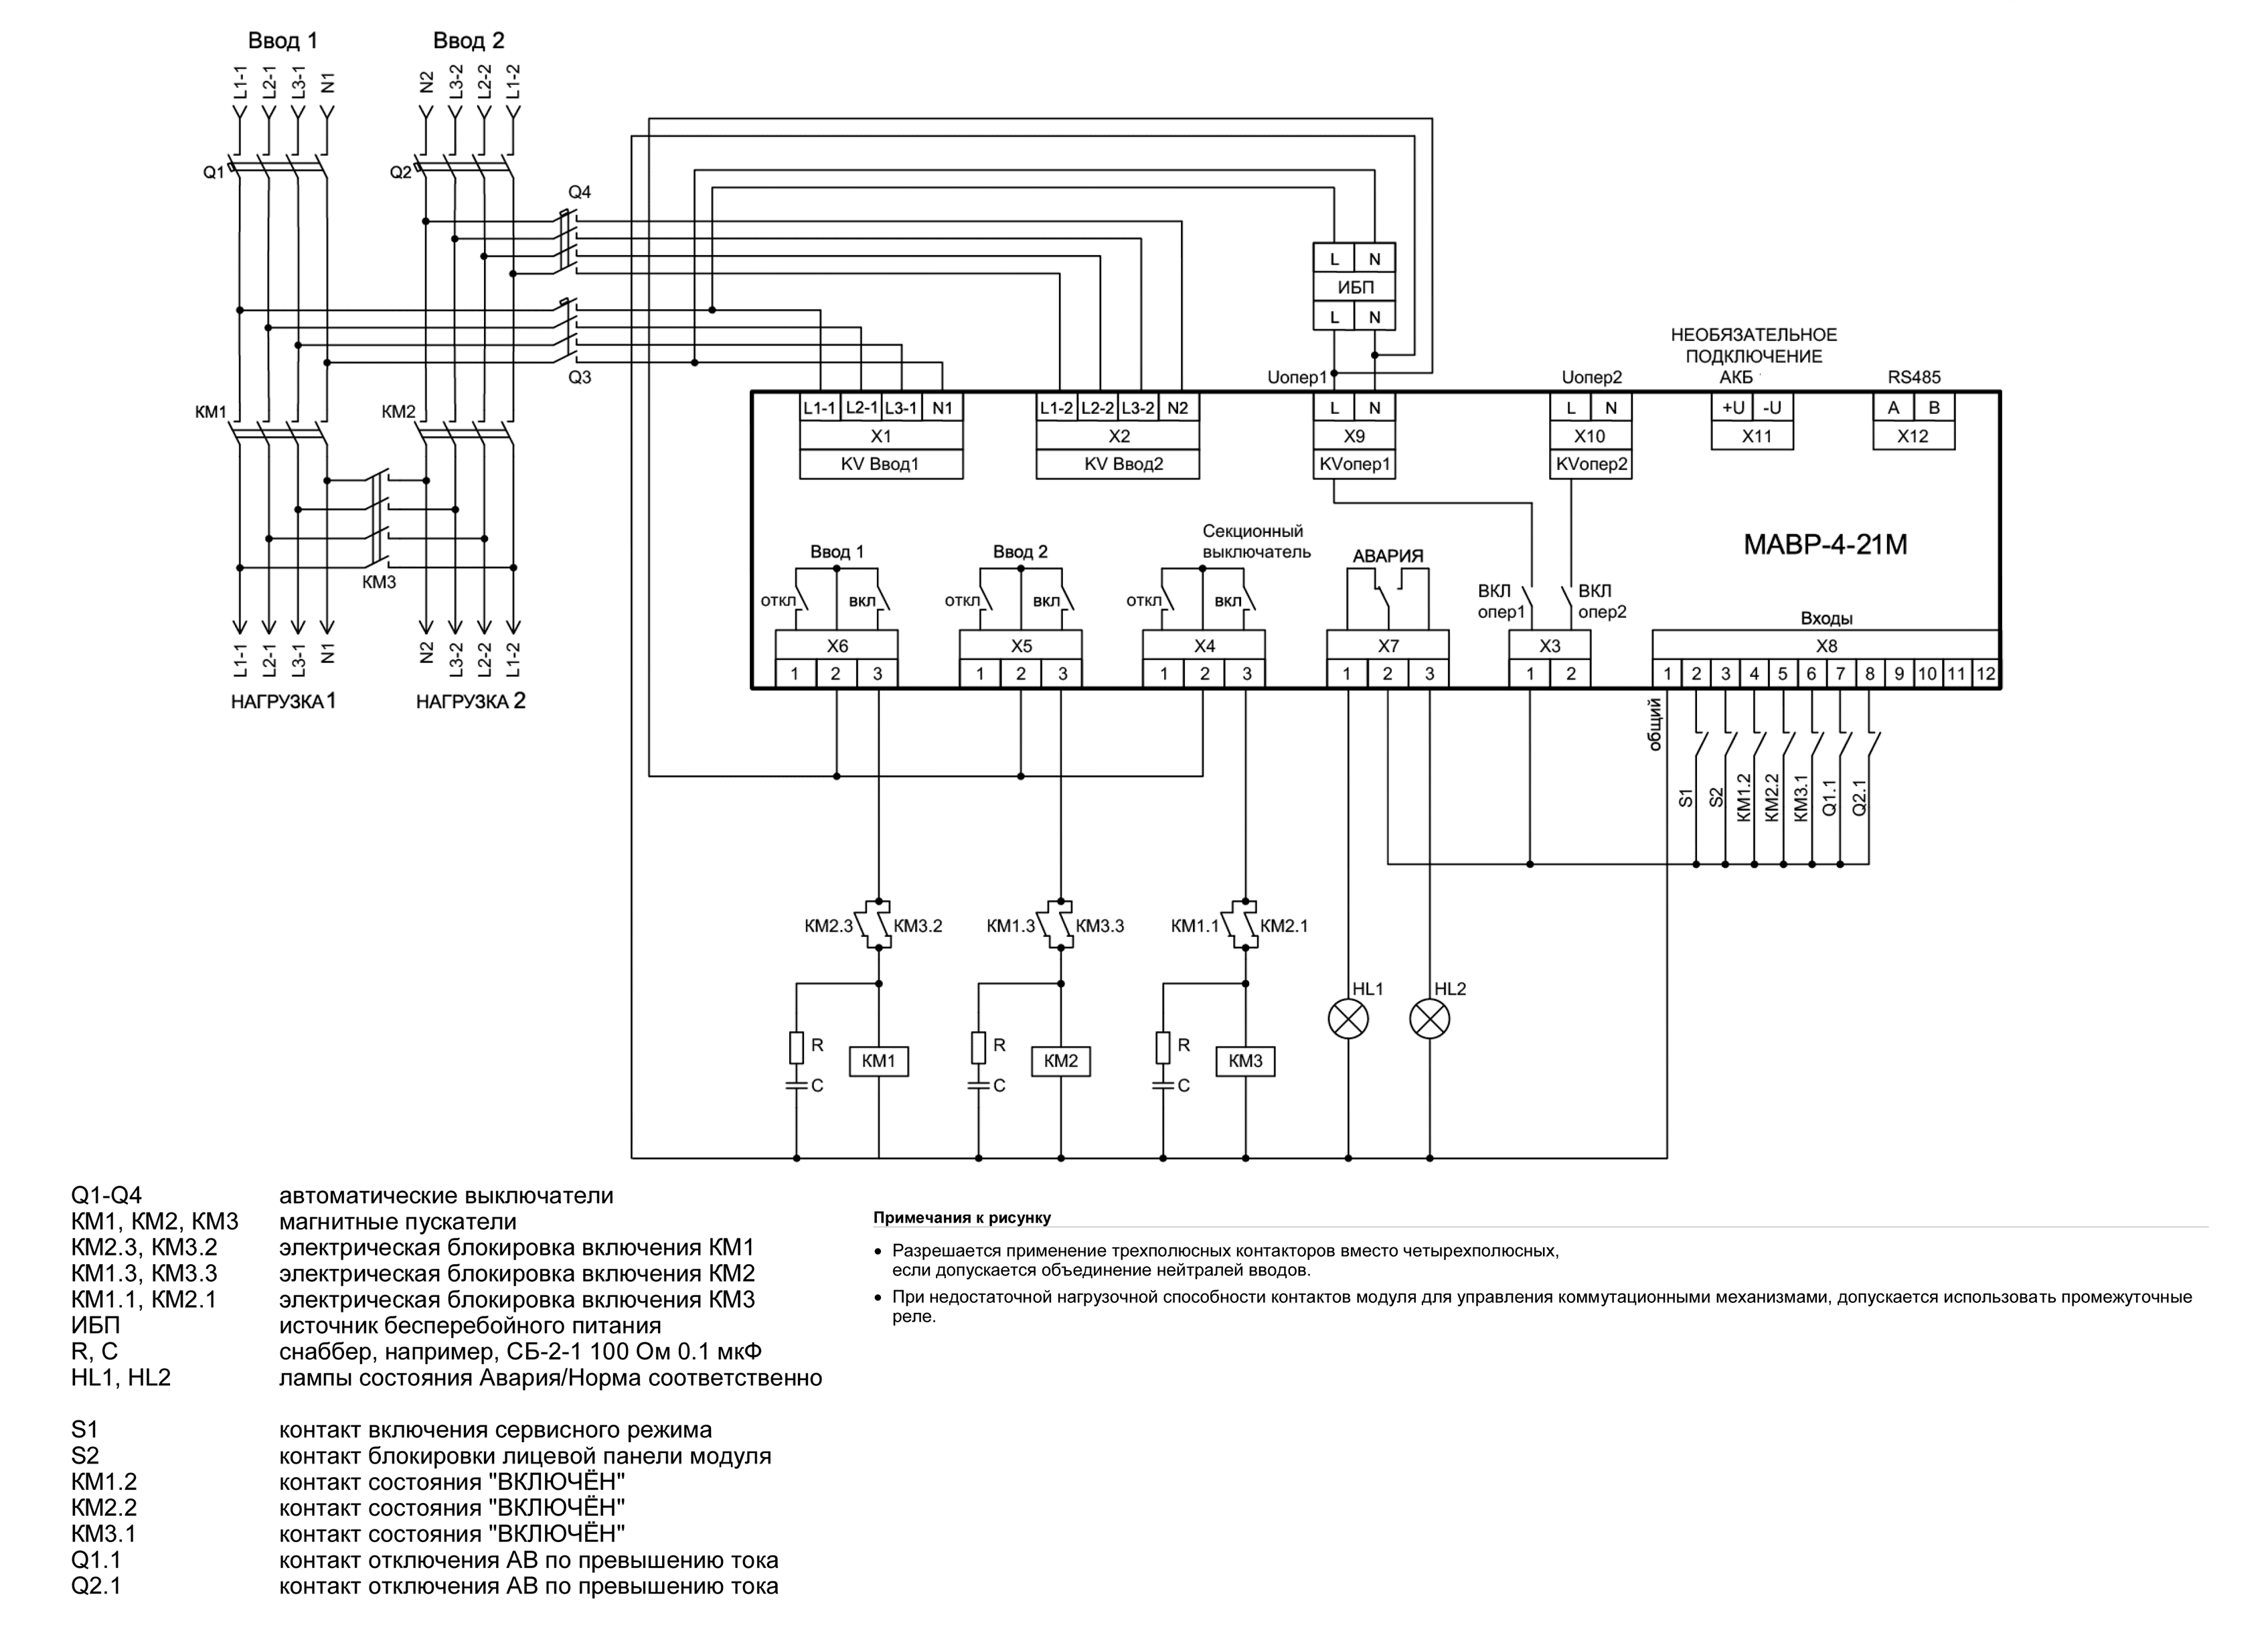 Схема управления с магнитными пускателями (для работы модуля в режиме «КМ от ОП») МАВР-4-21М